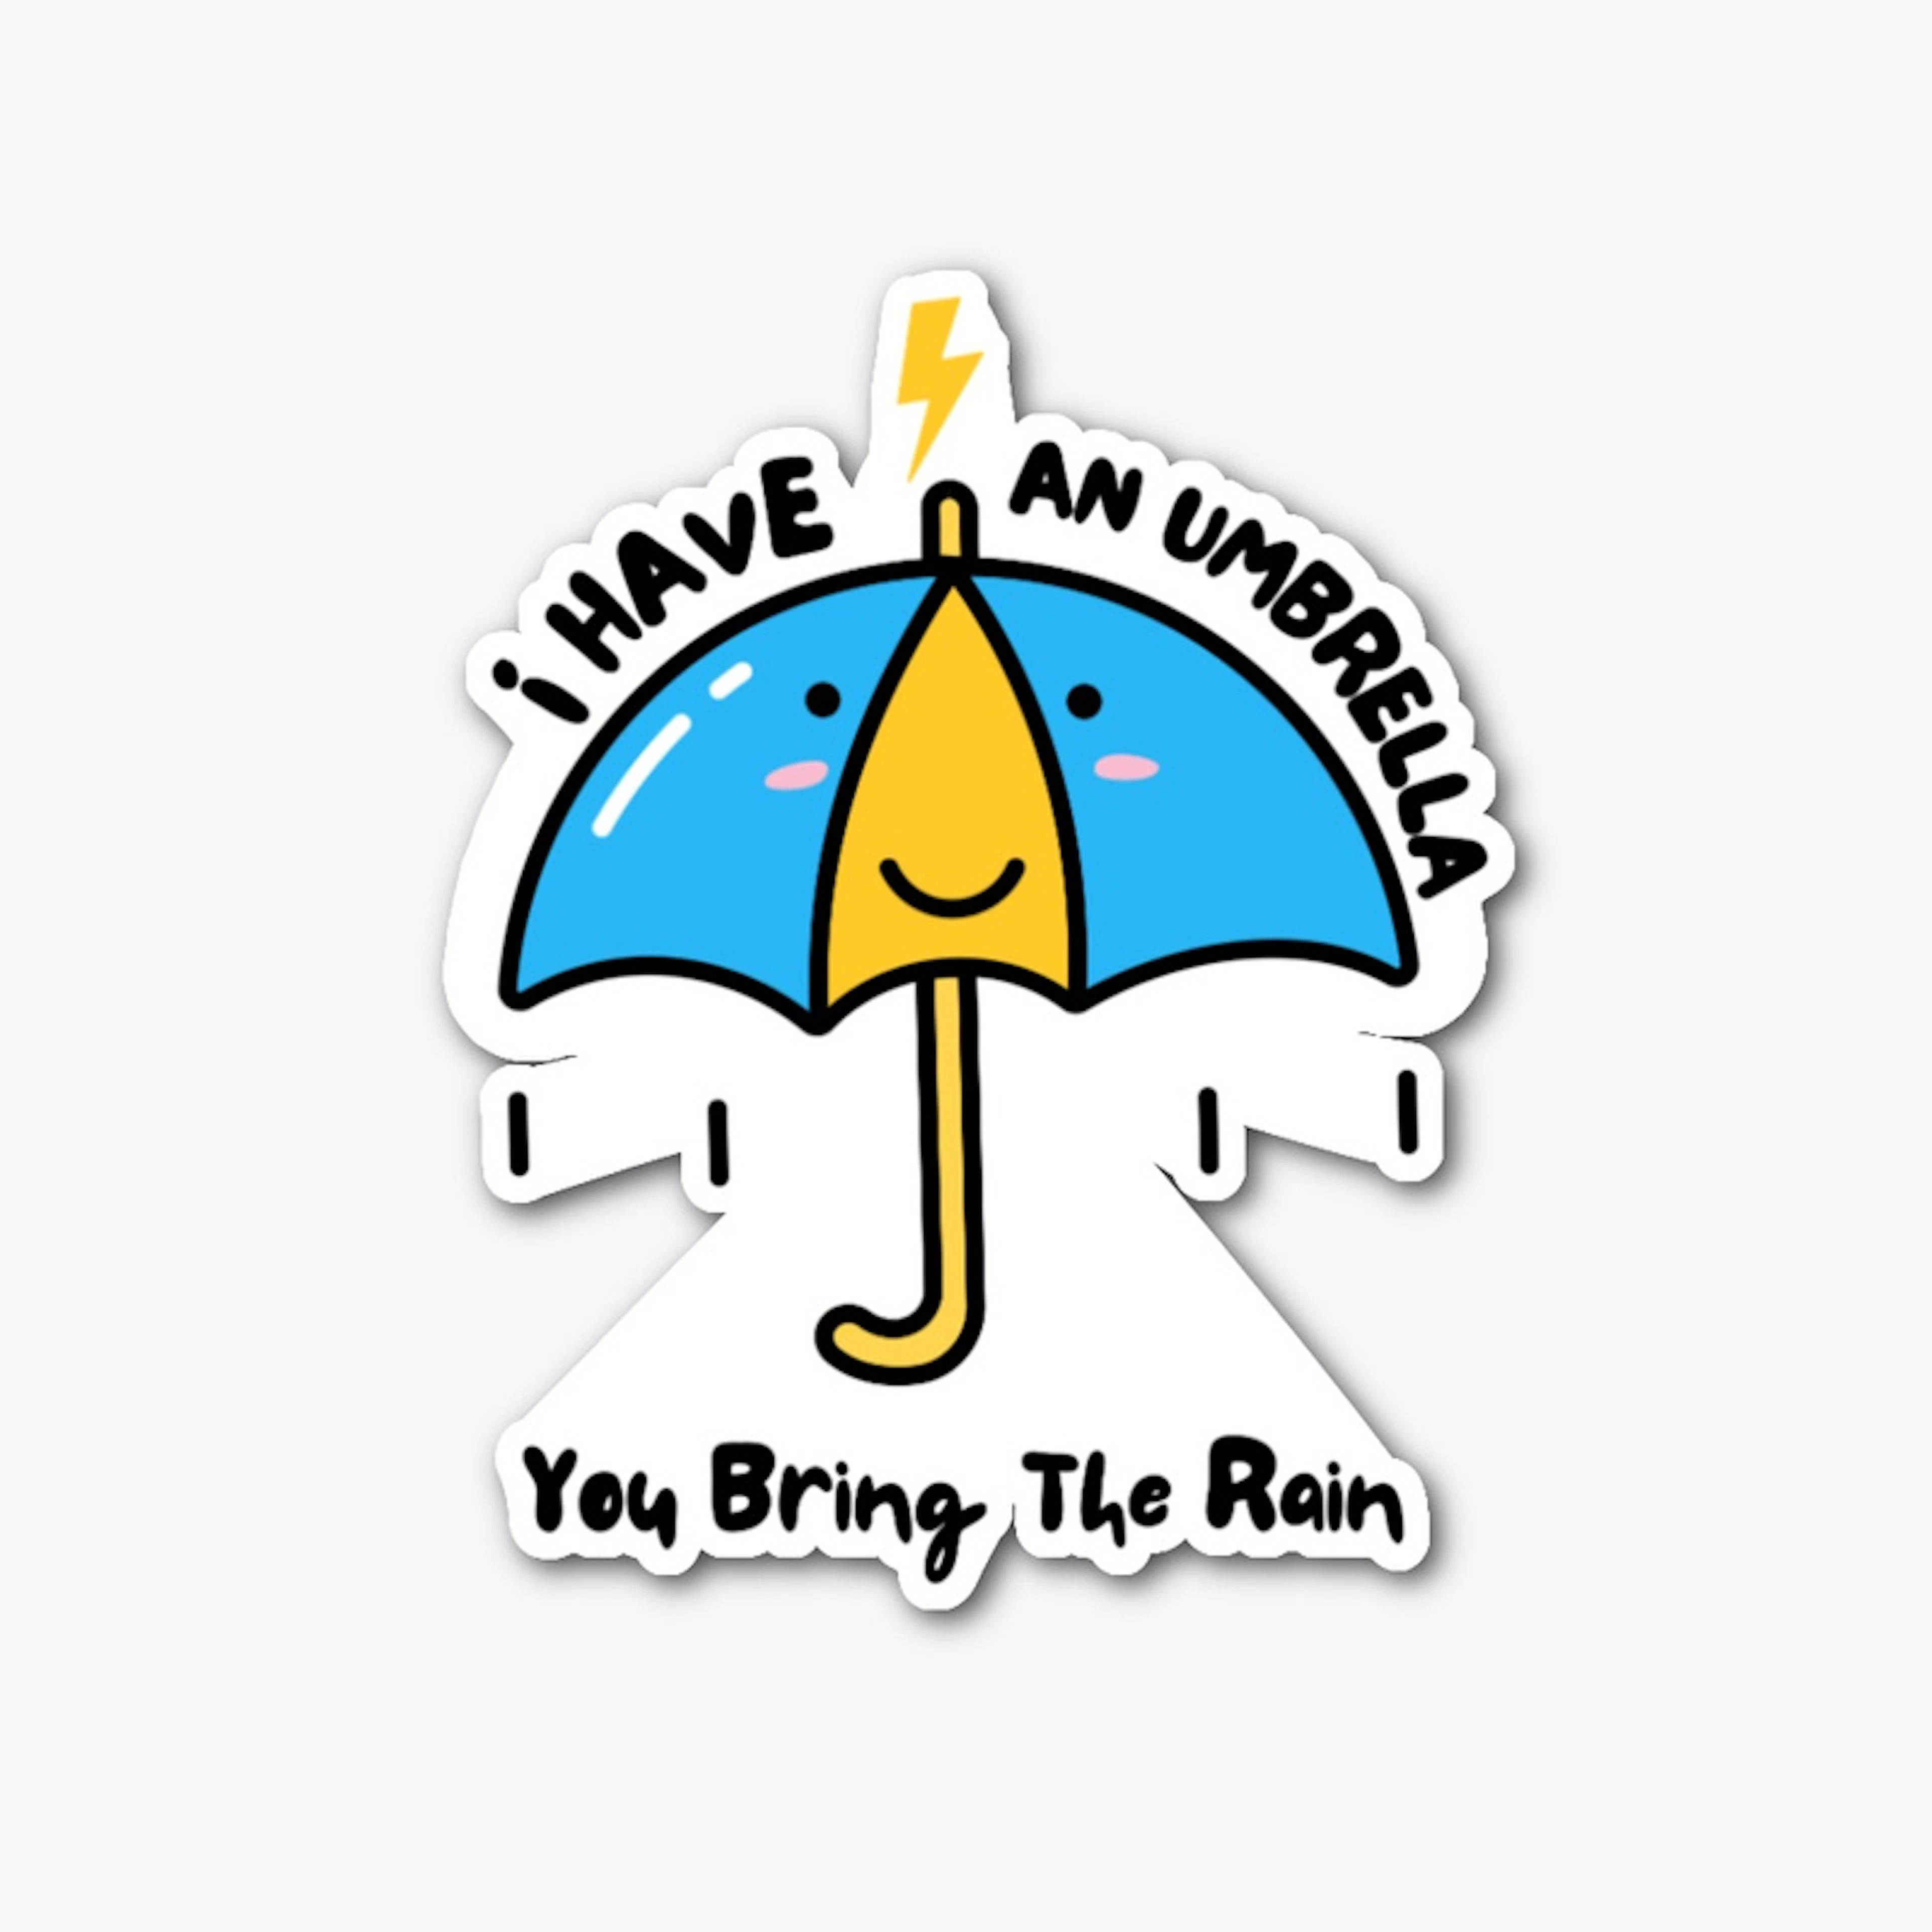 I have an umbrella, you bring rain